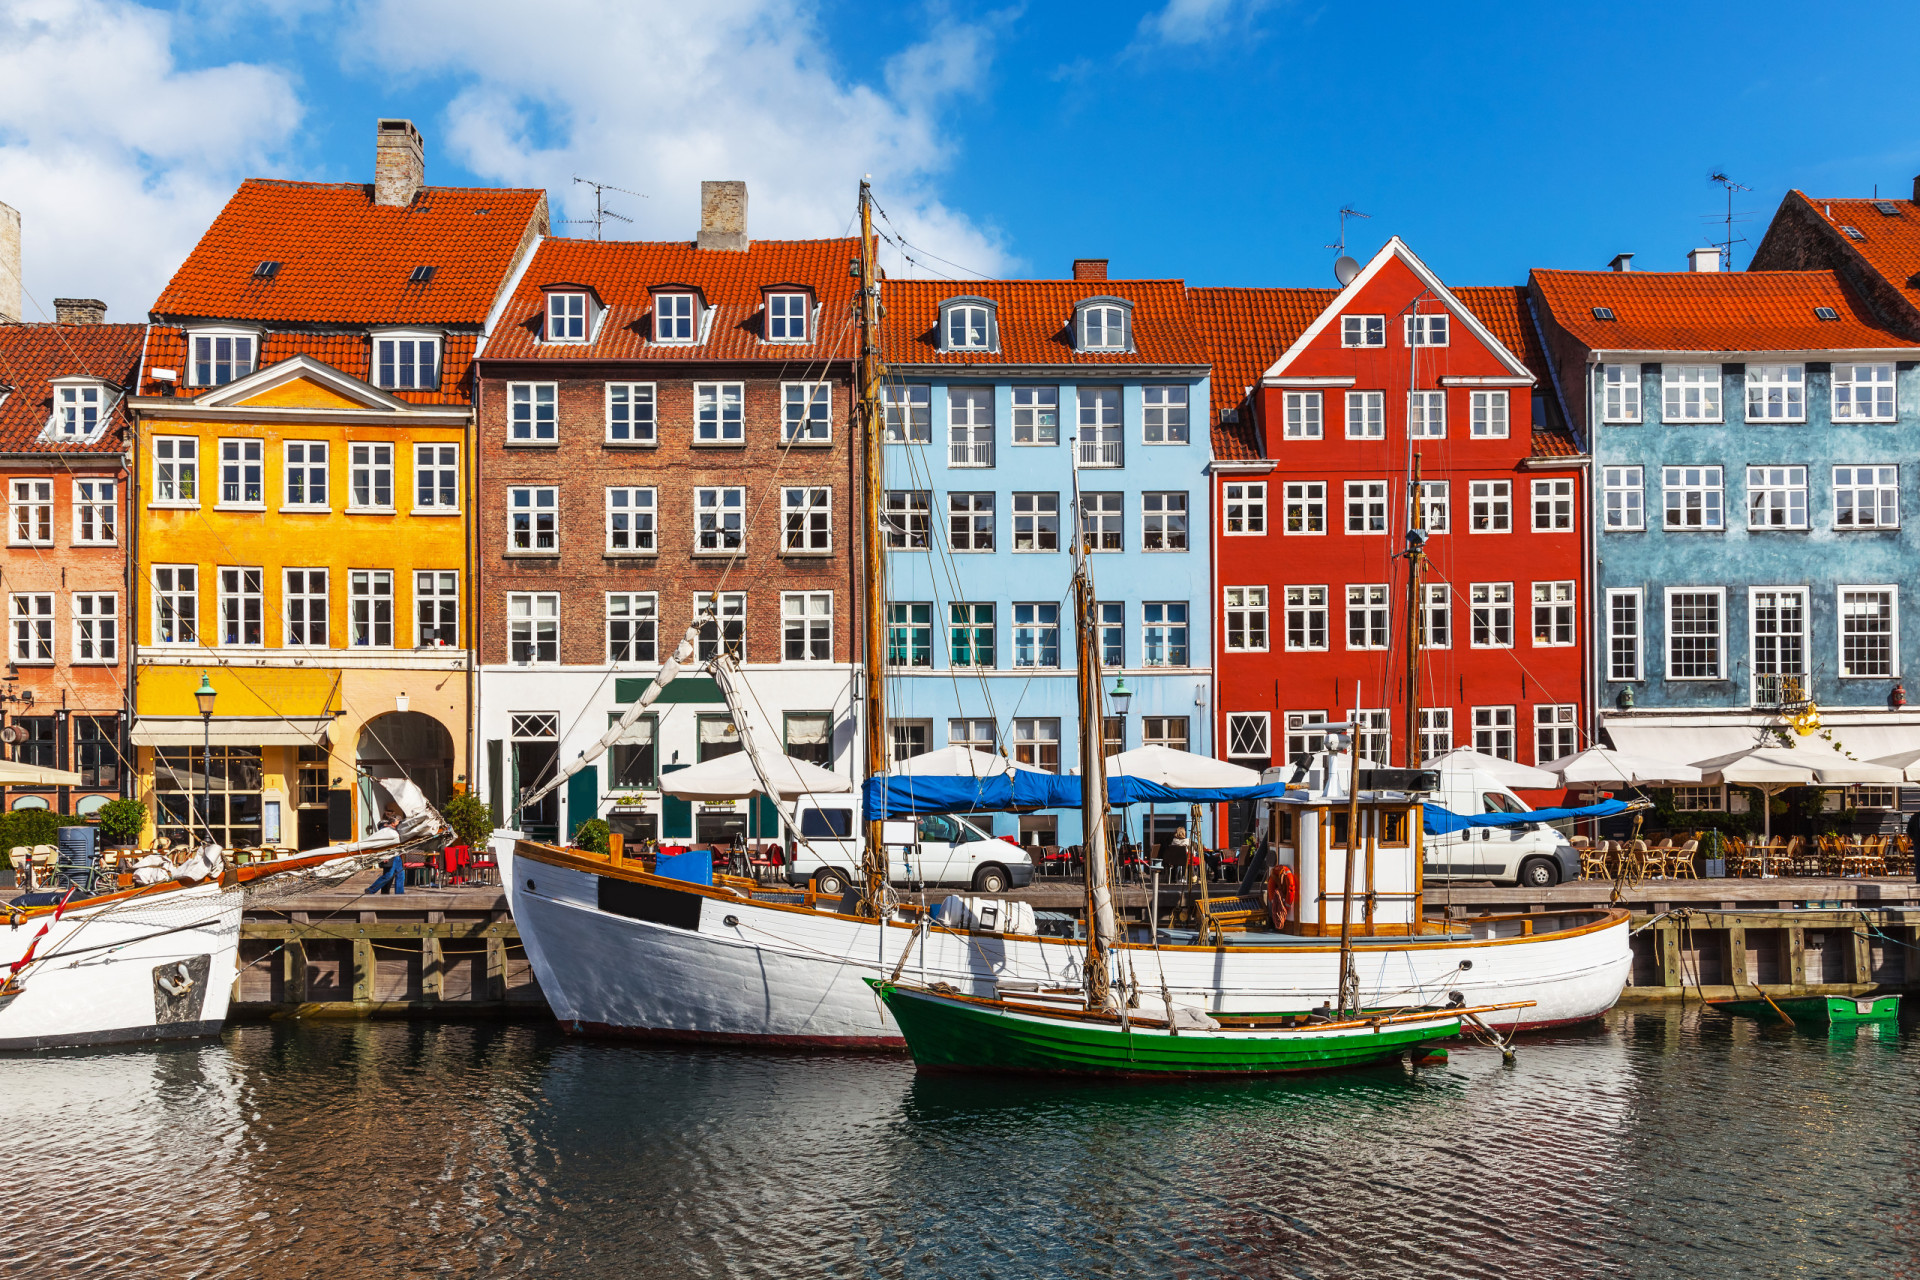 <p>Connu dans le monde entier pour être l'un des pays les plus heureux de la planète, le Danemark le doit en grande partie à sa gestion socio-économique. Le pays scandinave est également très entreprenant, avec plusieurs entreprises de renommée mondiale opérant dans le monde entier. En outre, la capitale, Copenhague, est devenue ces dernières années une destination très prisée en matière de mode et de gastronomie.</p><p><a href="https://www.msn.com/fr-fr/community/channel/vid-7xx8mnucu55yw63we9va2gwr7uihbxwc68fxqp25x6tg4ftibpra?cvid=94631541bc0f4f89bfd59158d696ad7e">Suivez-nous et accédez tous les jours à du contenu exclusif</a></p>